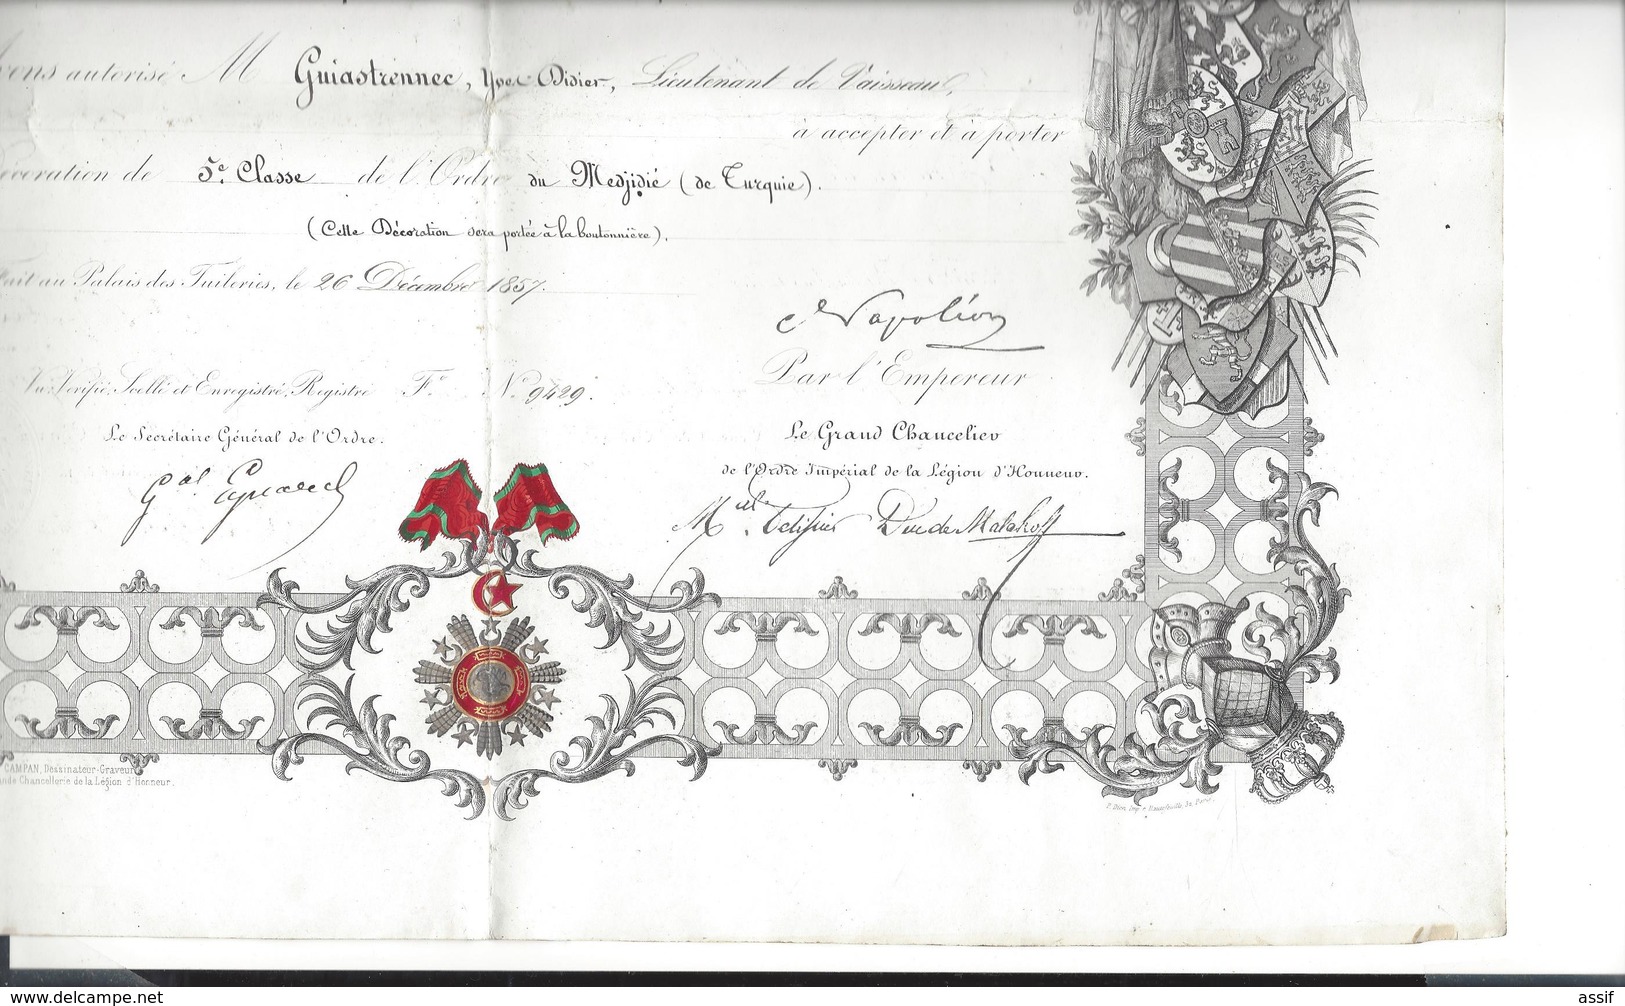 FIRMAN OTTOMAN Medjidié de Turquie 1857 pour Guiastrennec né à Landerneau ( expédition Crimée ) diplôme ordres étrangers